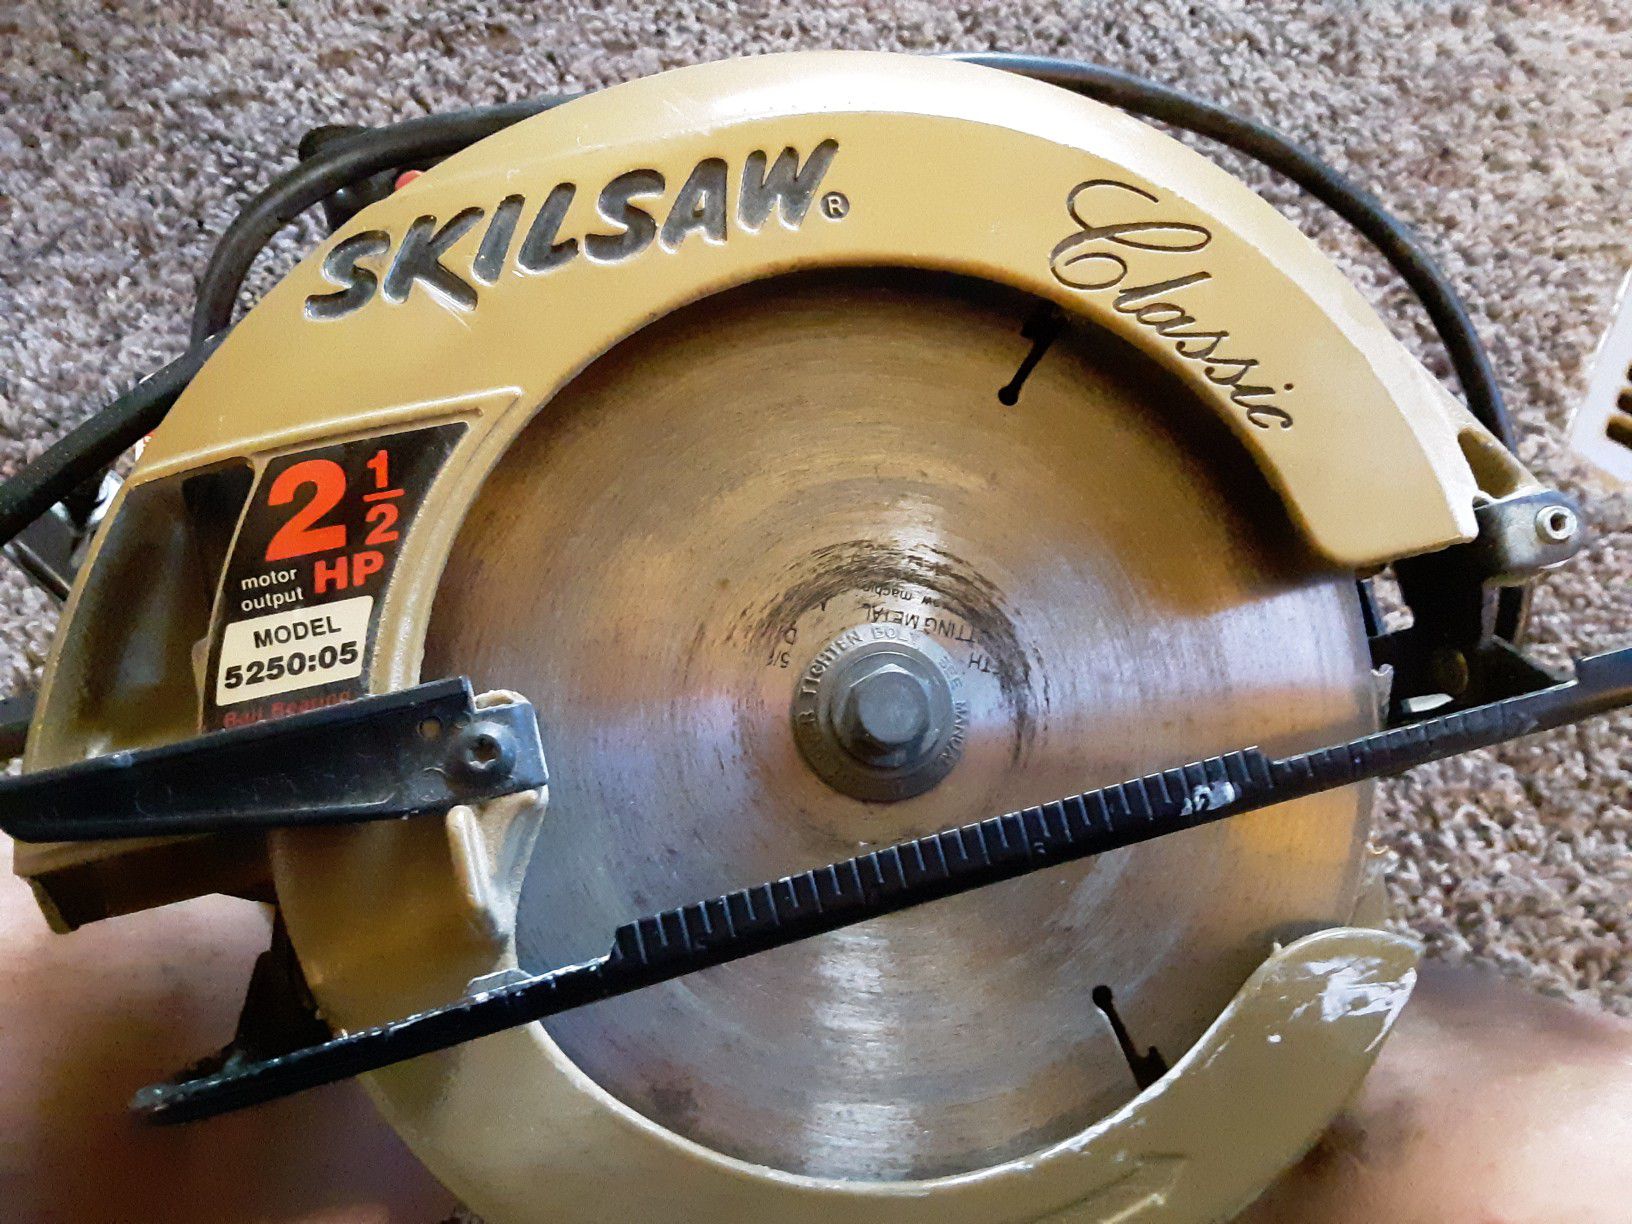 Skilsaw model 5250:05